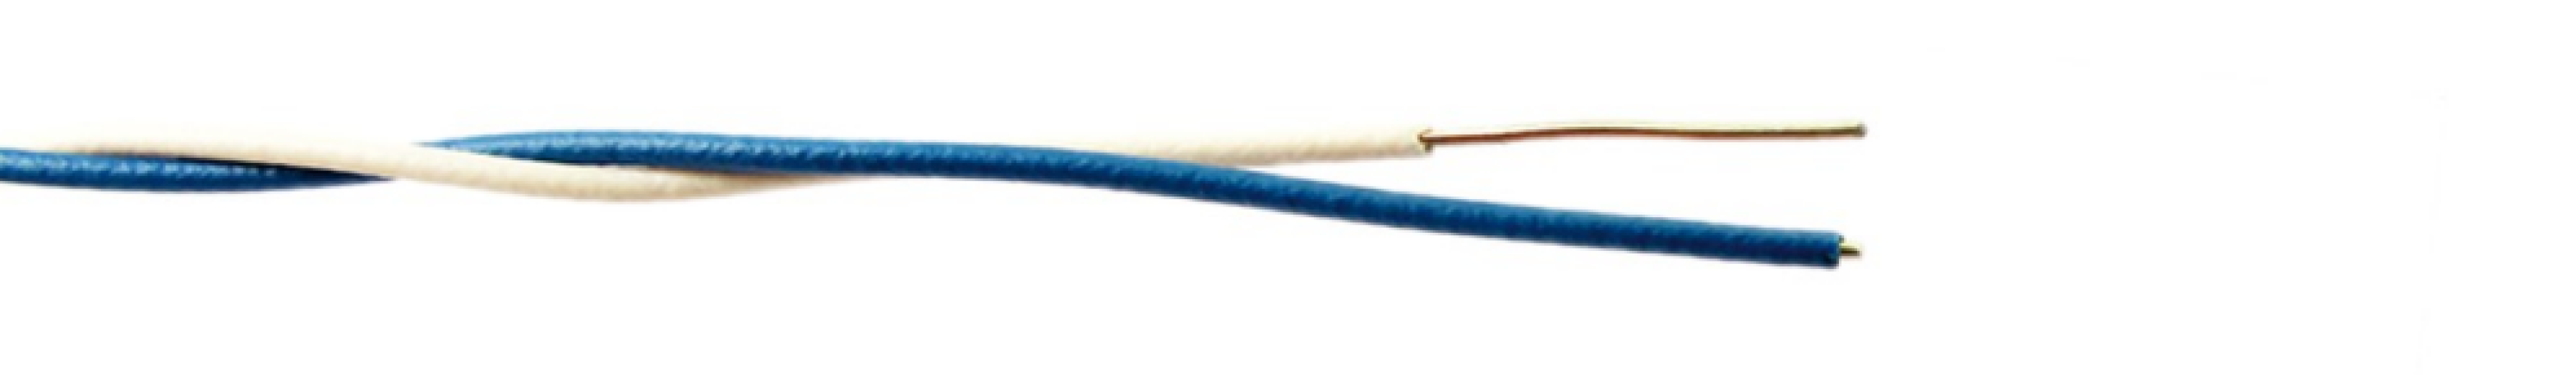 Cavi telefonici G.Ecol.Cables 2x0.6 diametro 1.2mm da 250m bianco blu - PERMUT-BL/B250 01